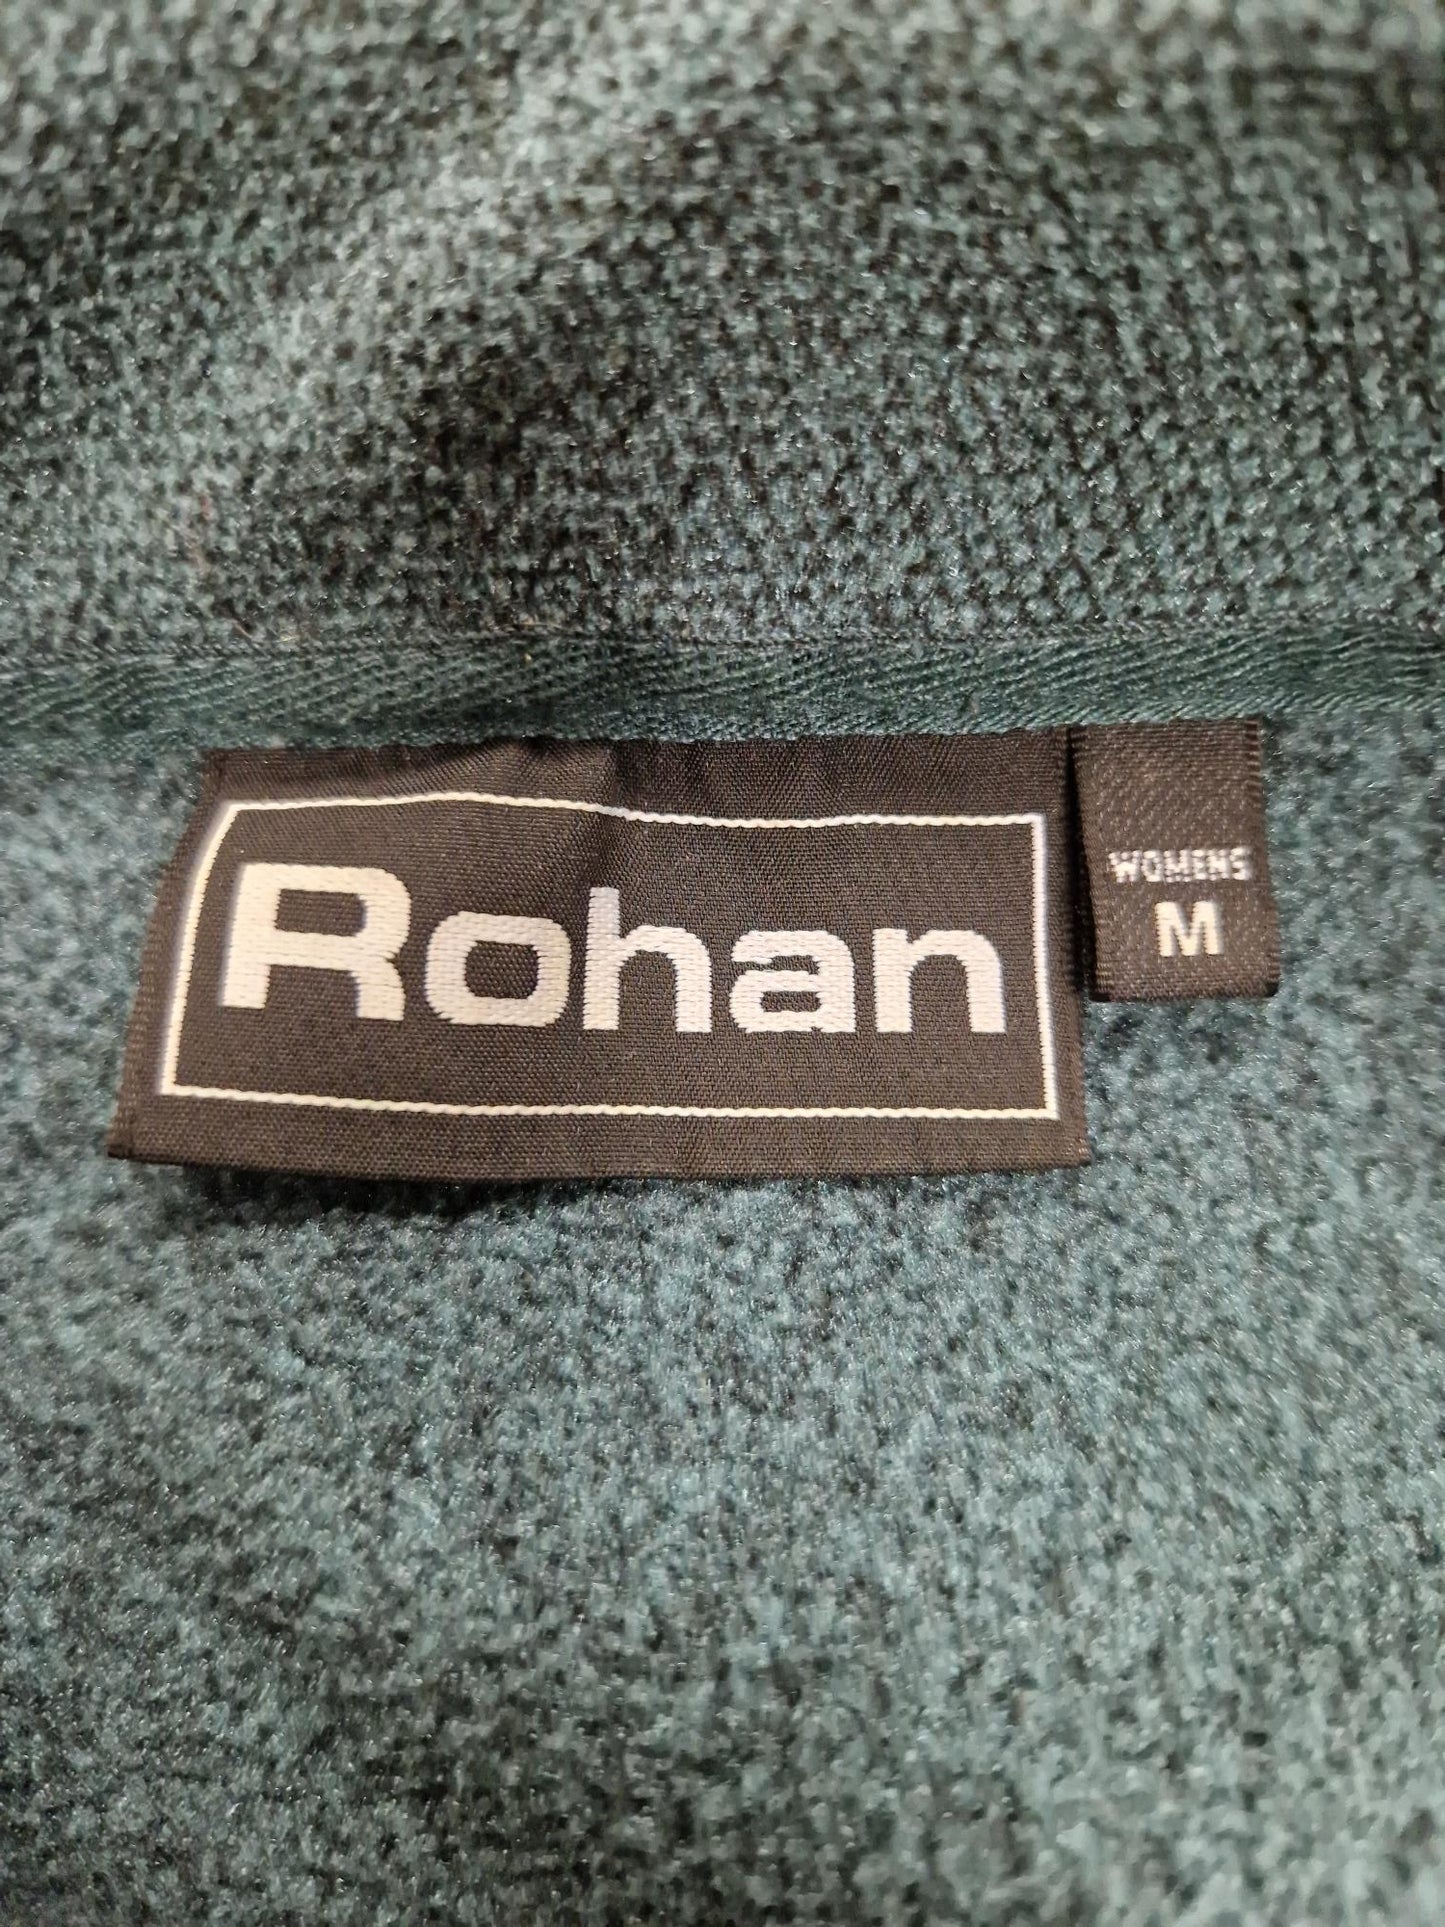 Rohan Ladies Fleece in Dark Green - Size Medium